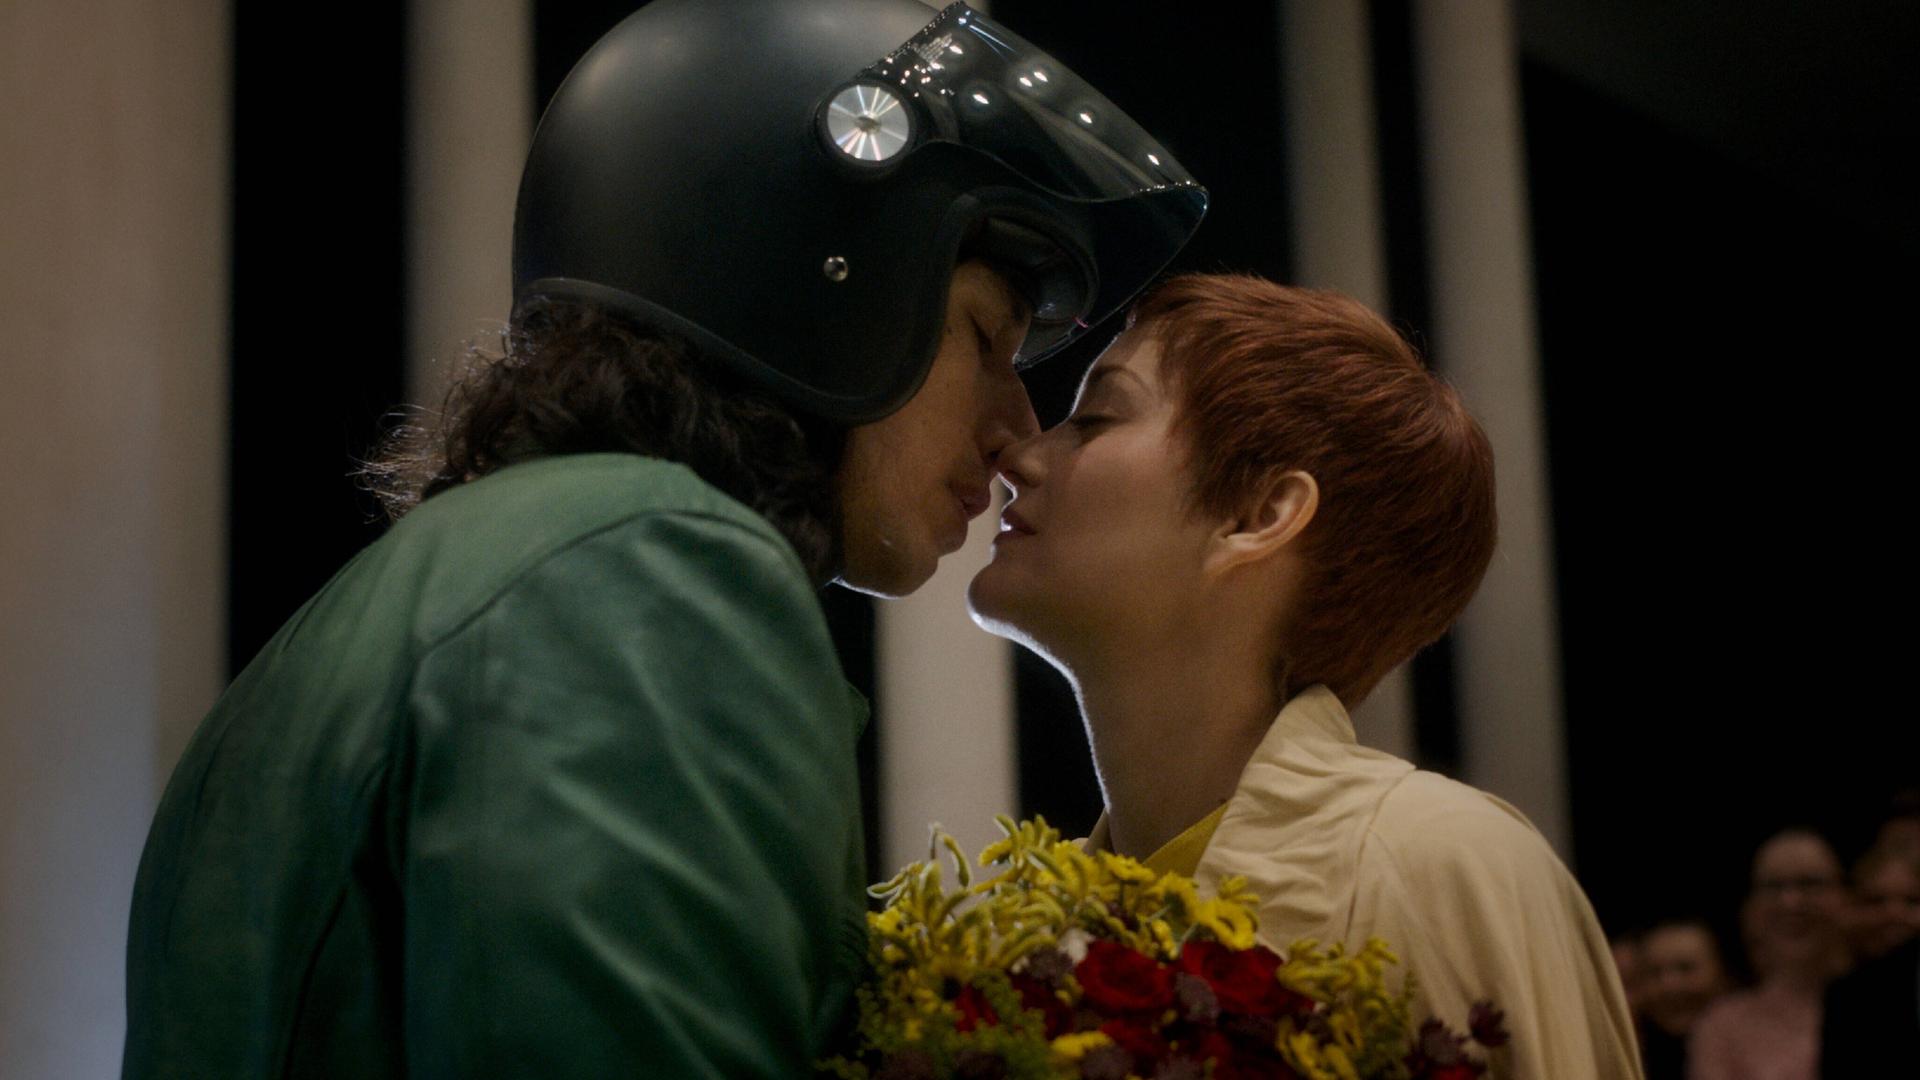 Ein Mann mit Motorradhelm küsst eine Frau, die einen Blumenstrauß hält.